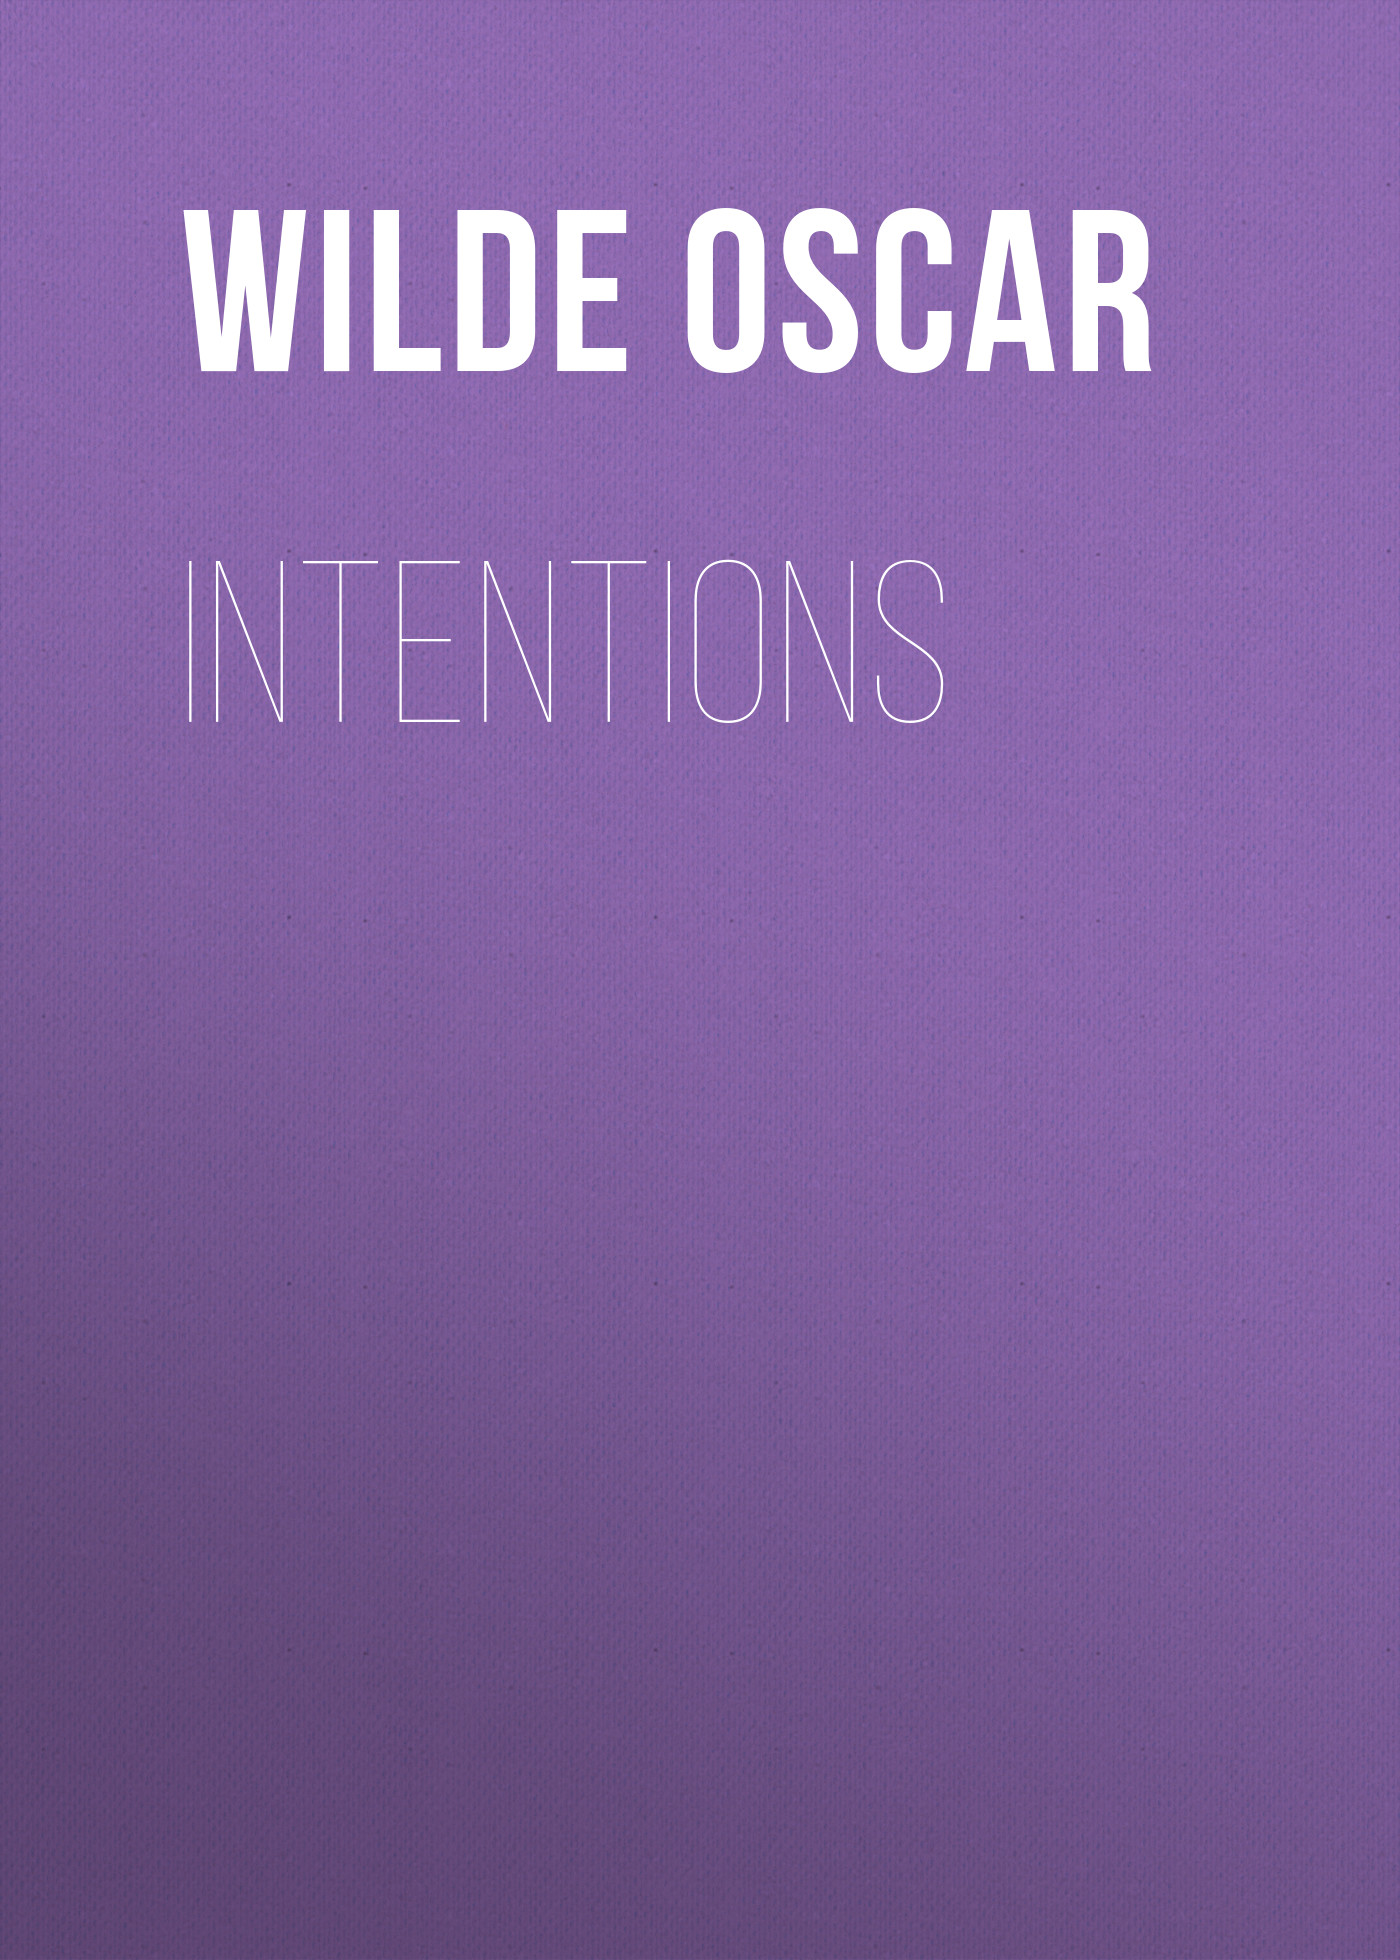 Книга Intentions из серии , созданная Oscar Wilde, может относится к жанру Литература 19 века, Зарубежная классика. Стоимость электронной книги Intentions с идентификатором 25560612 составляет 0 руб.